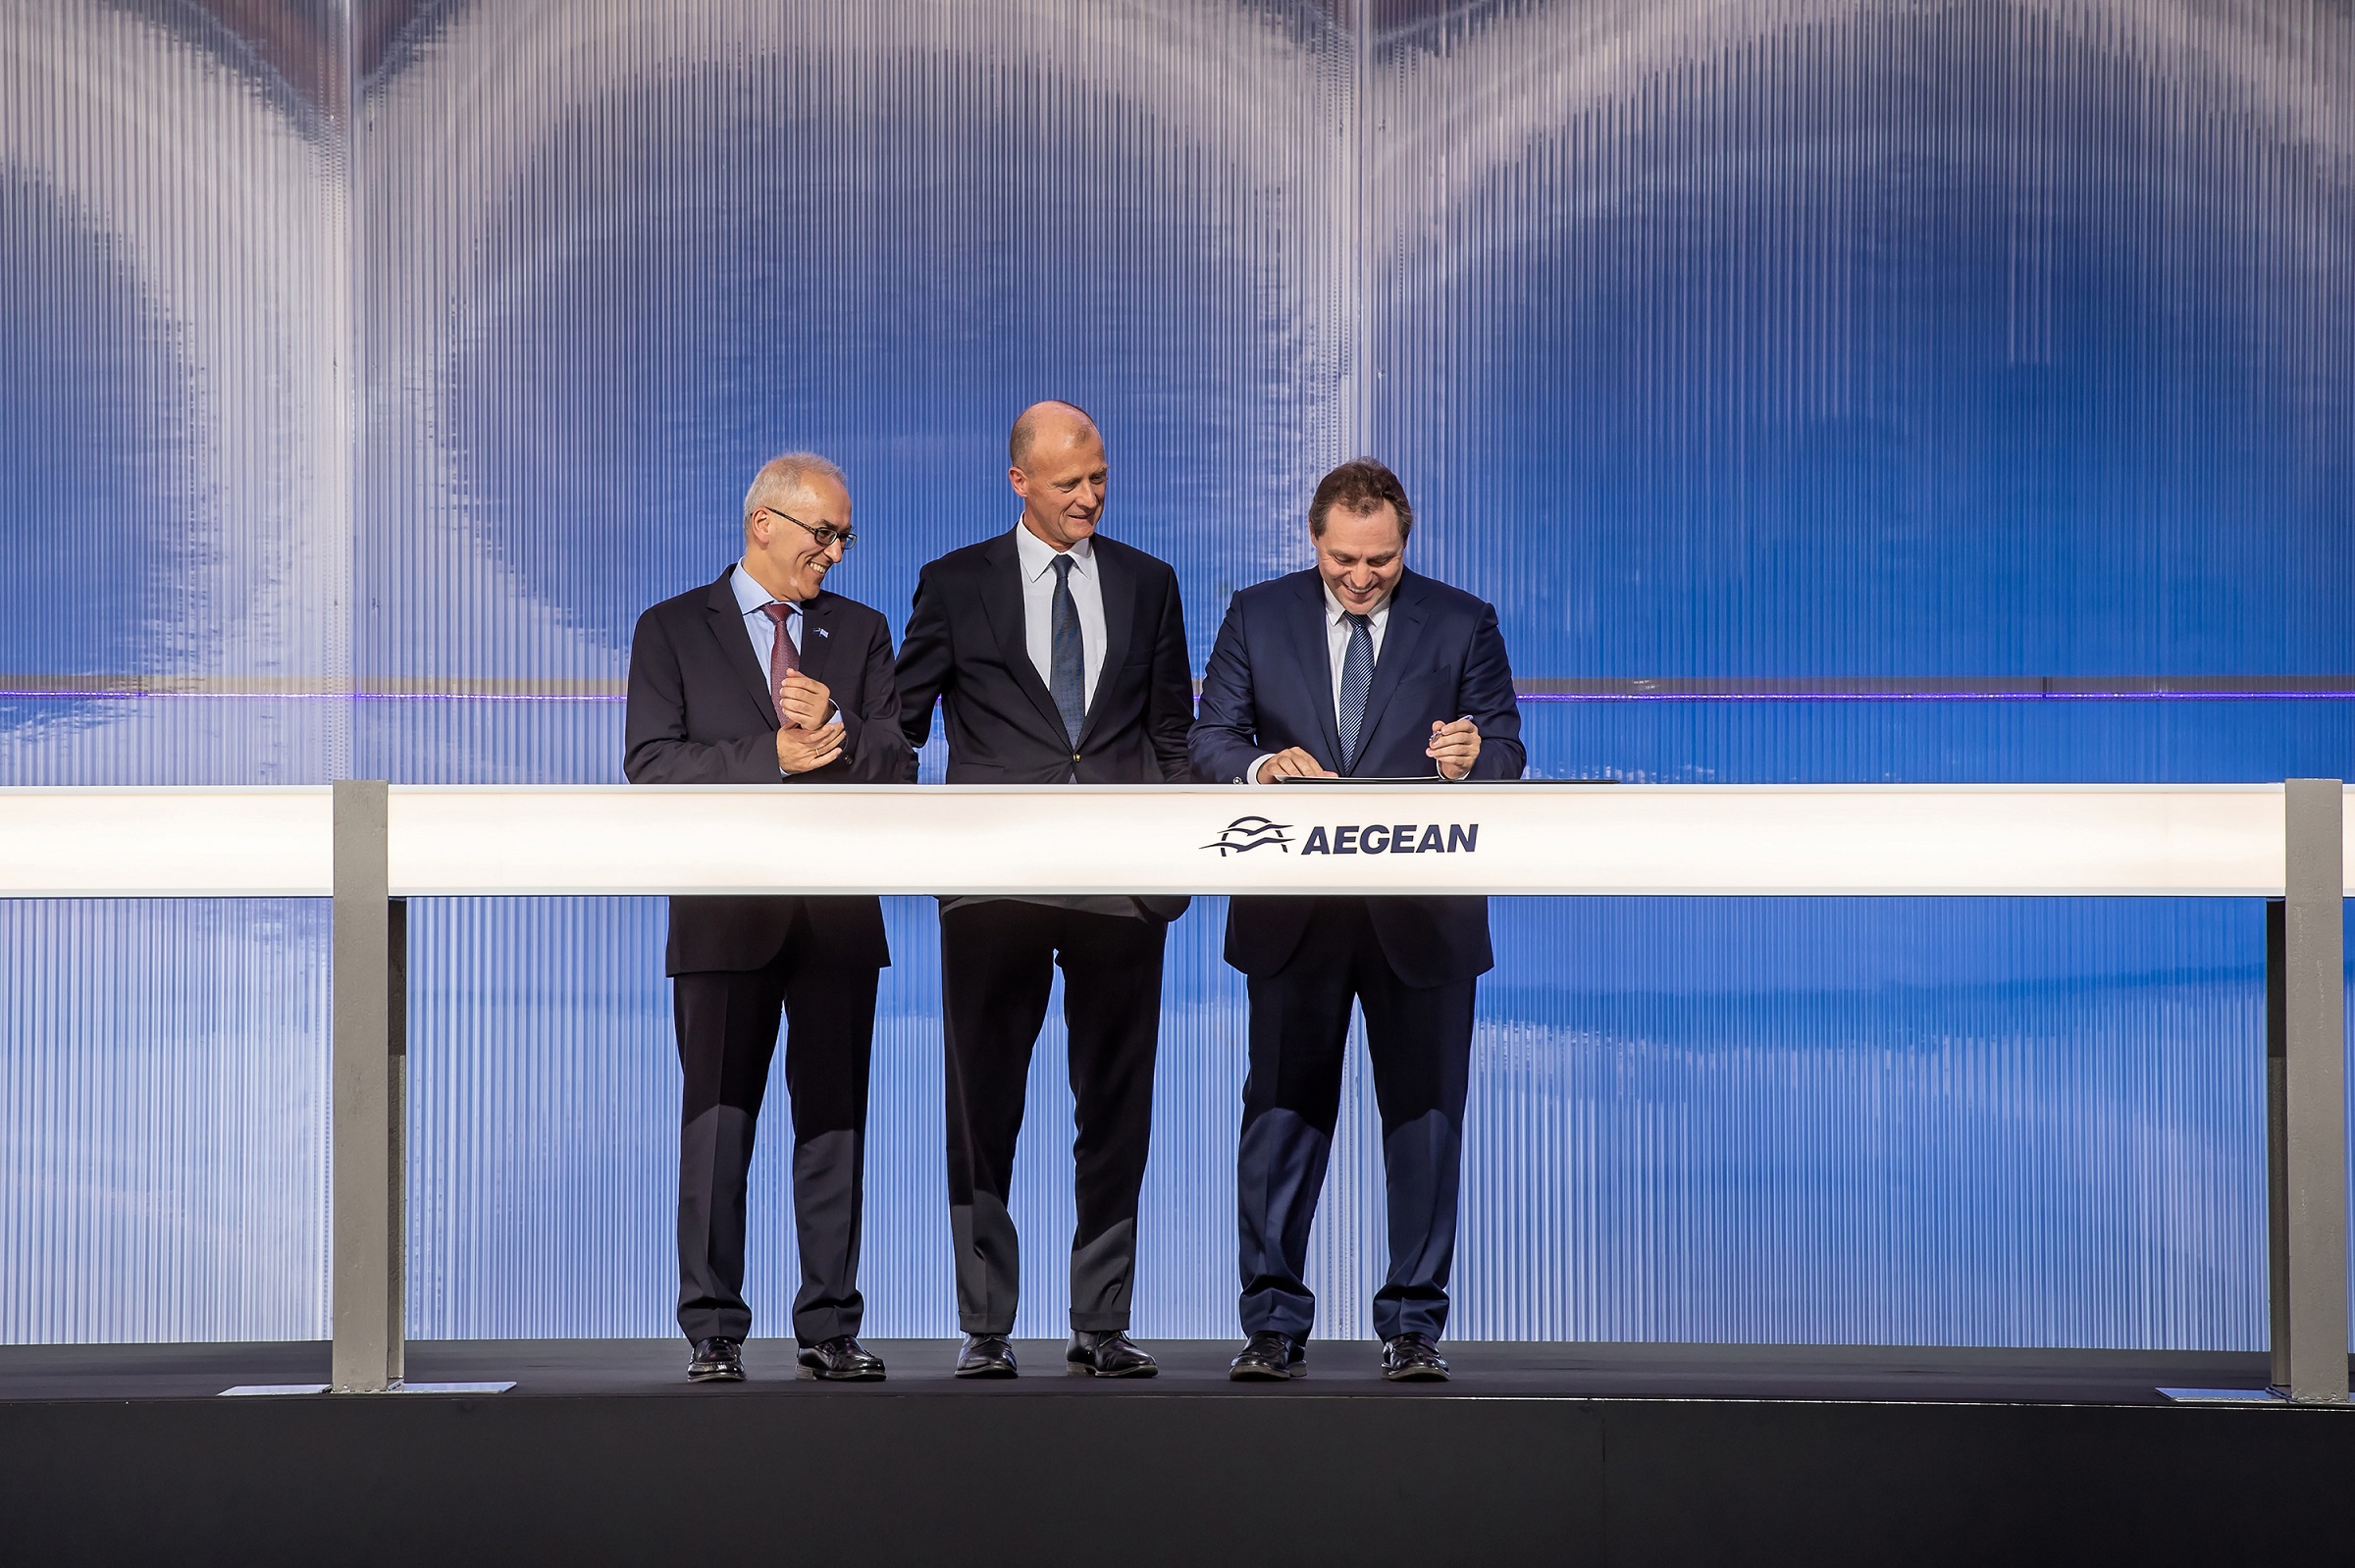 Η AEGEAN επενδύει στο μέλλον – Υπέγραψε με την Airbus παραγγελία 42 νέων αεροσκαφών Α320neo